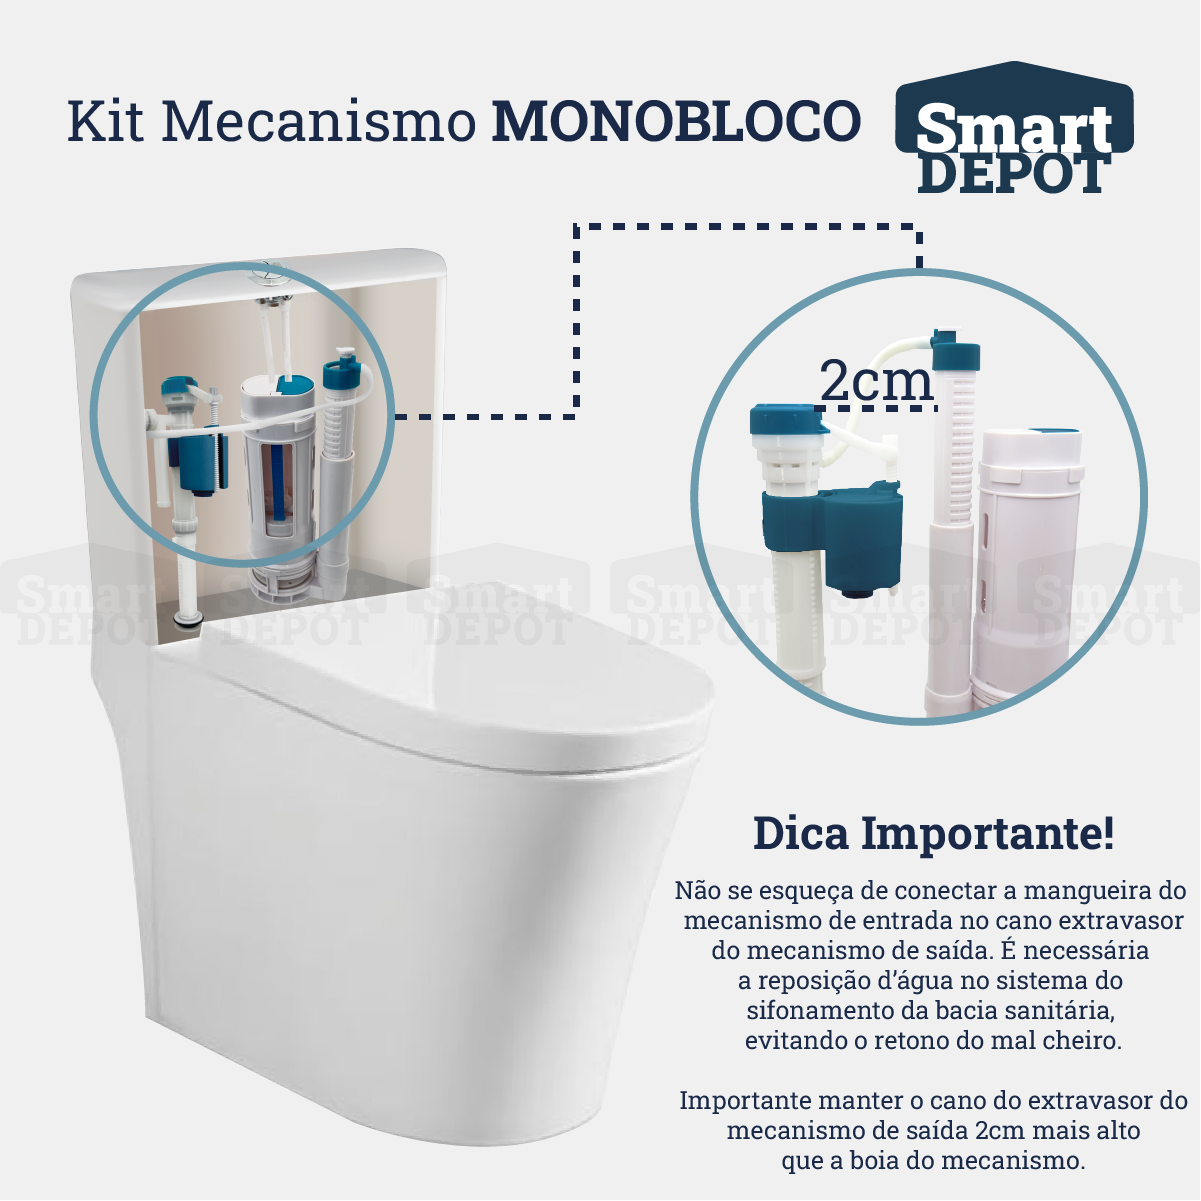 Kit Mecanismo de Descarga Caixa Acoplada Monobloco Completo Smart Depot com Botão Superior Duplo - 6